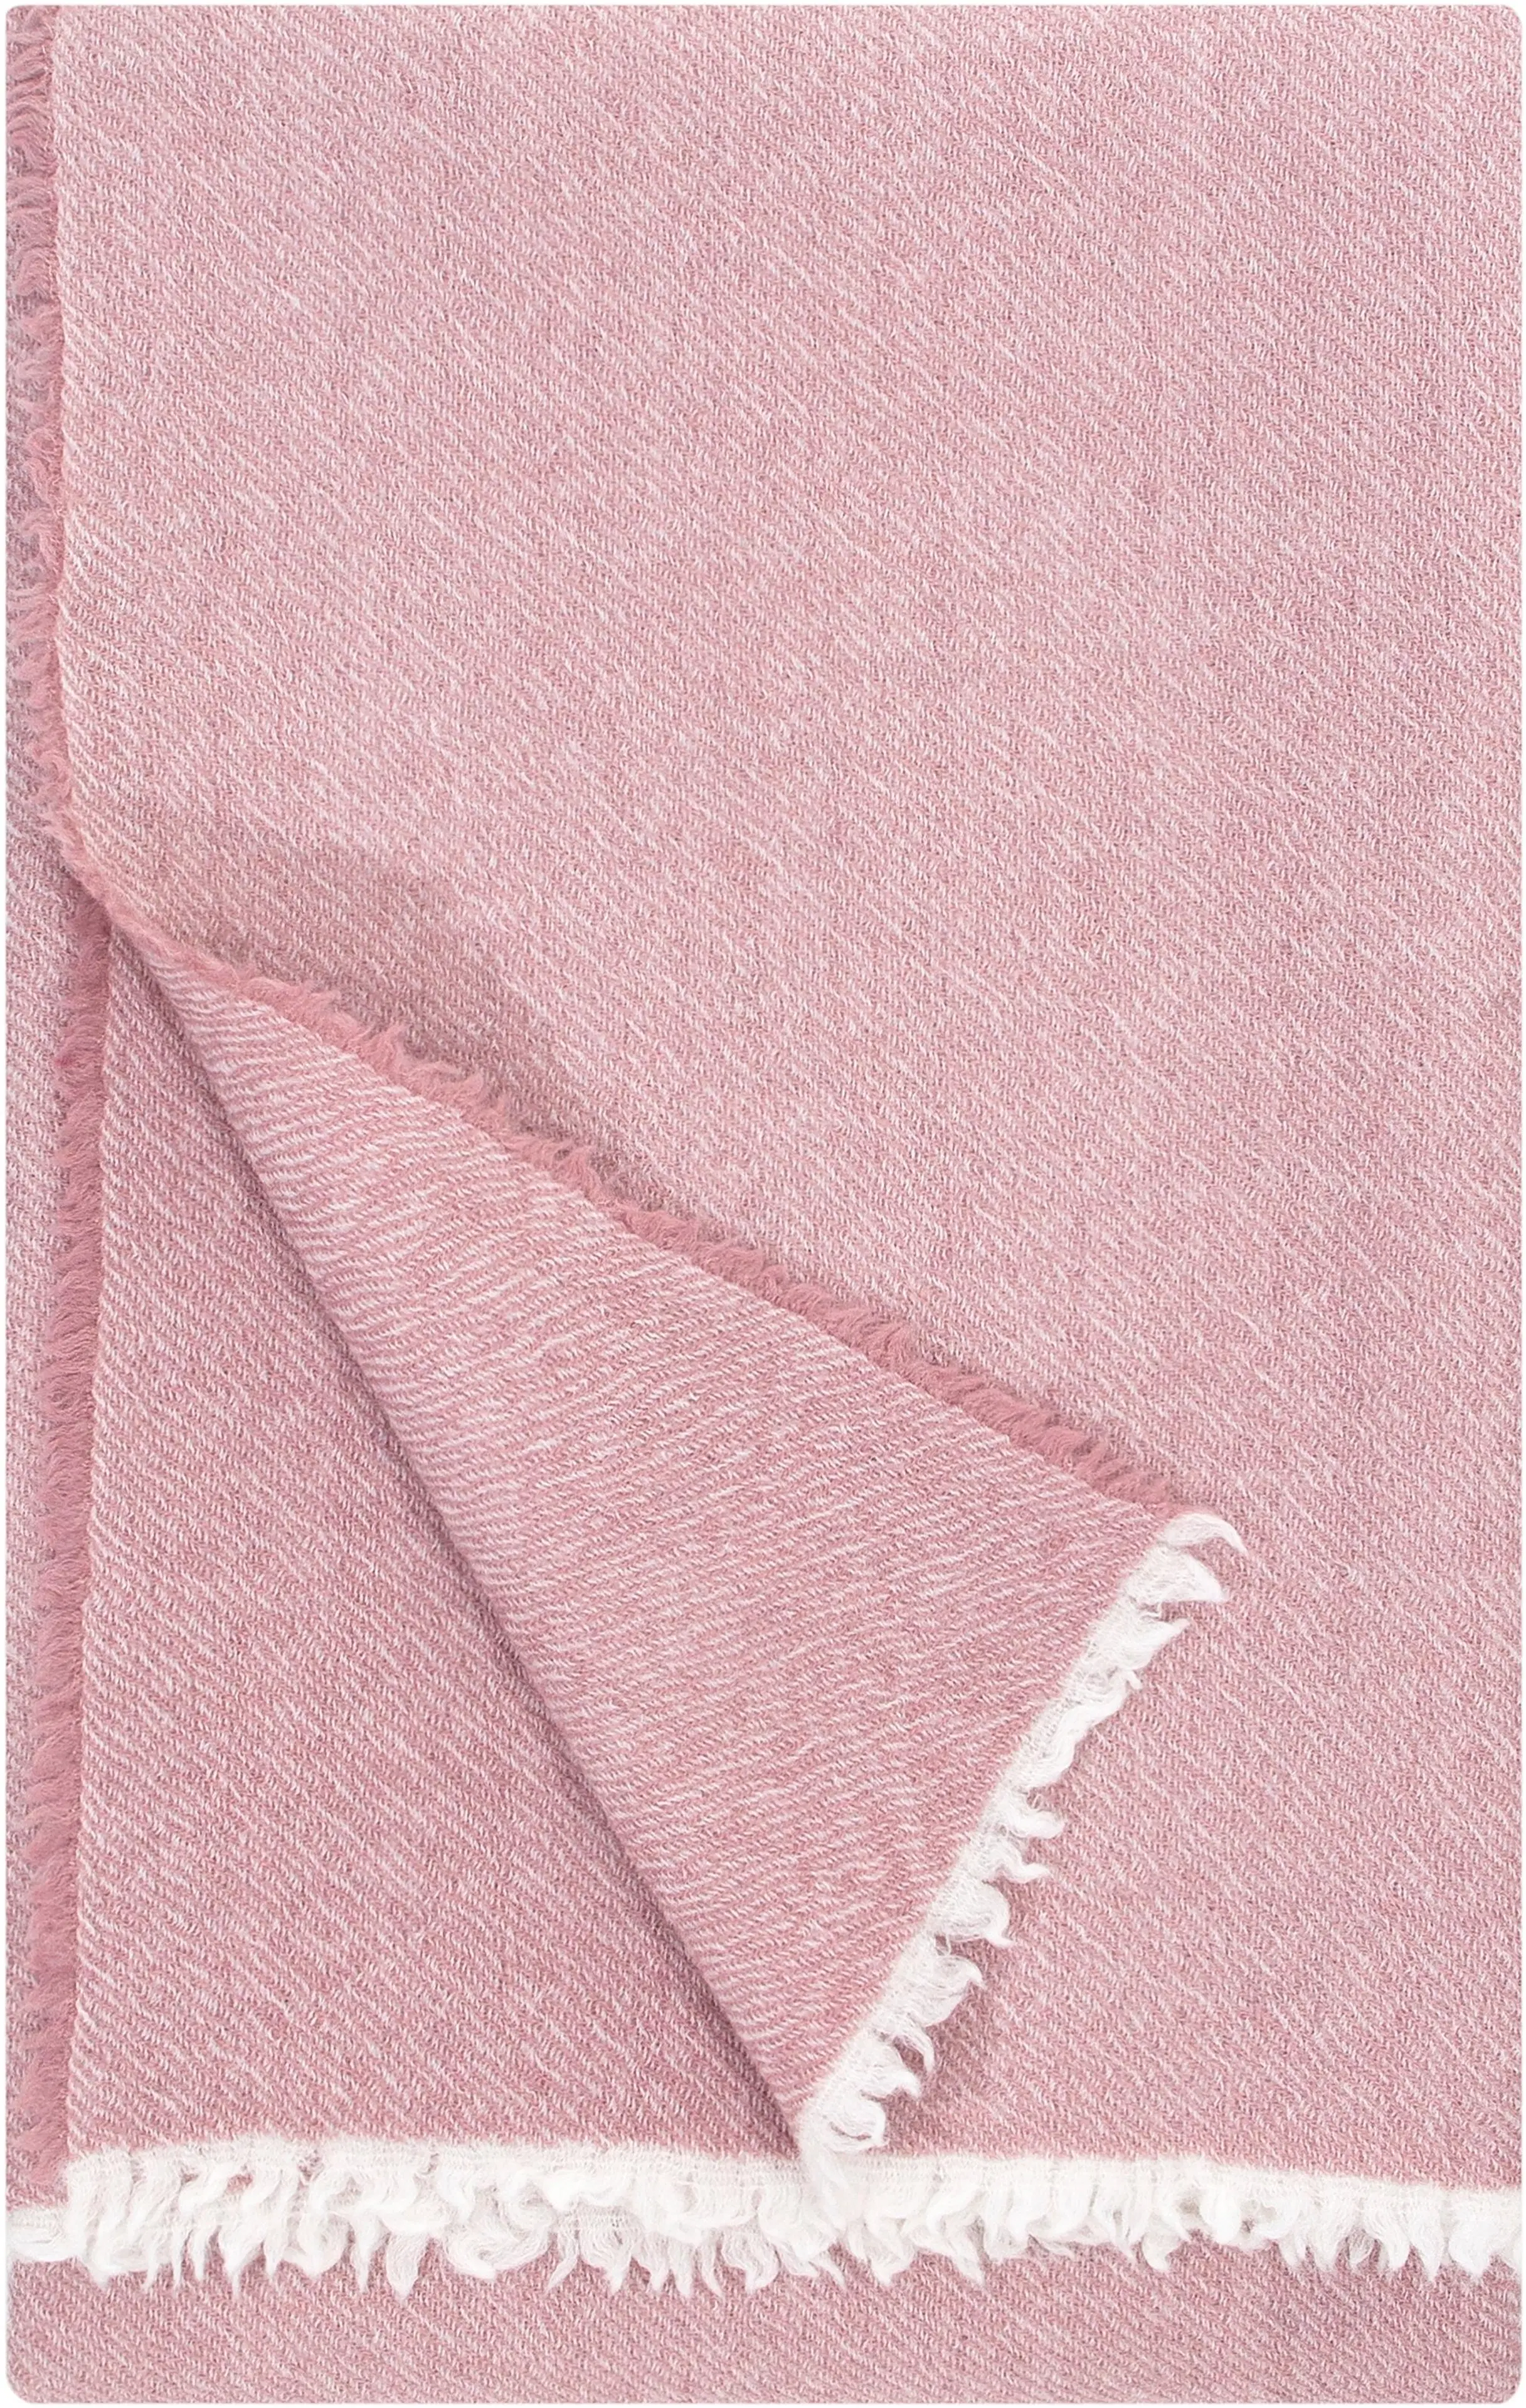 Lapuan Kankurit Sara huopa 140x180cm, roosa